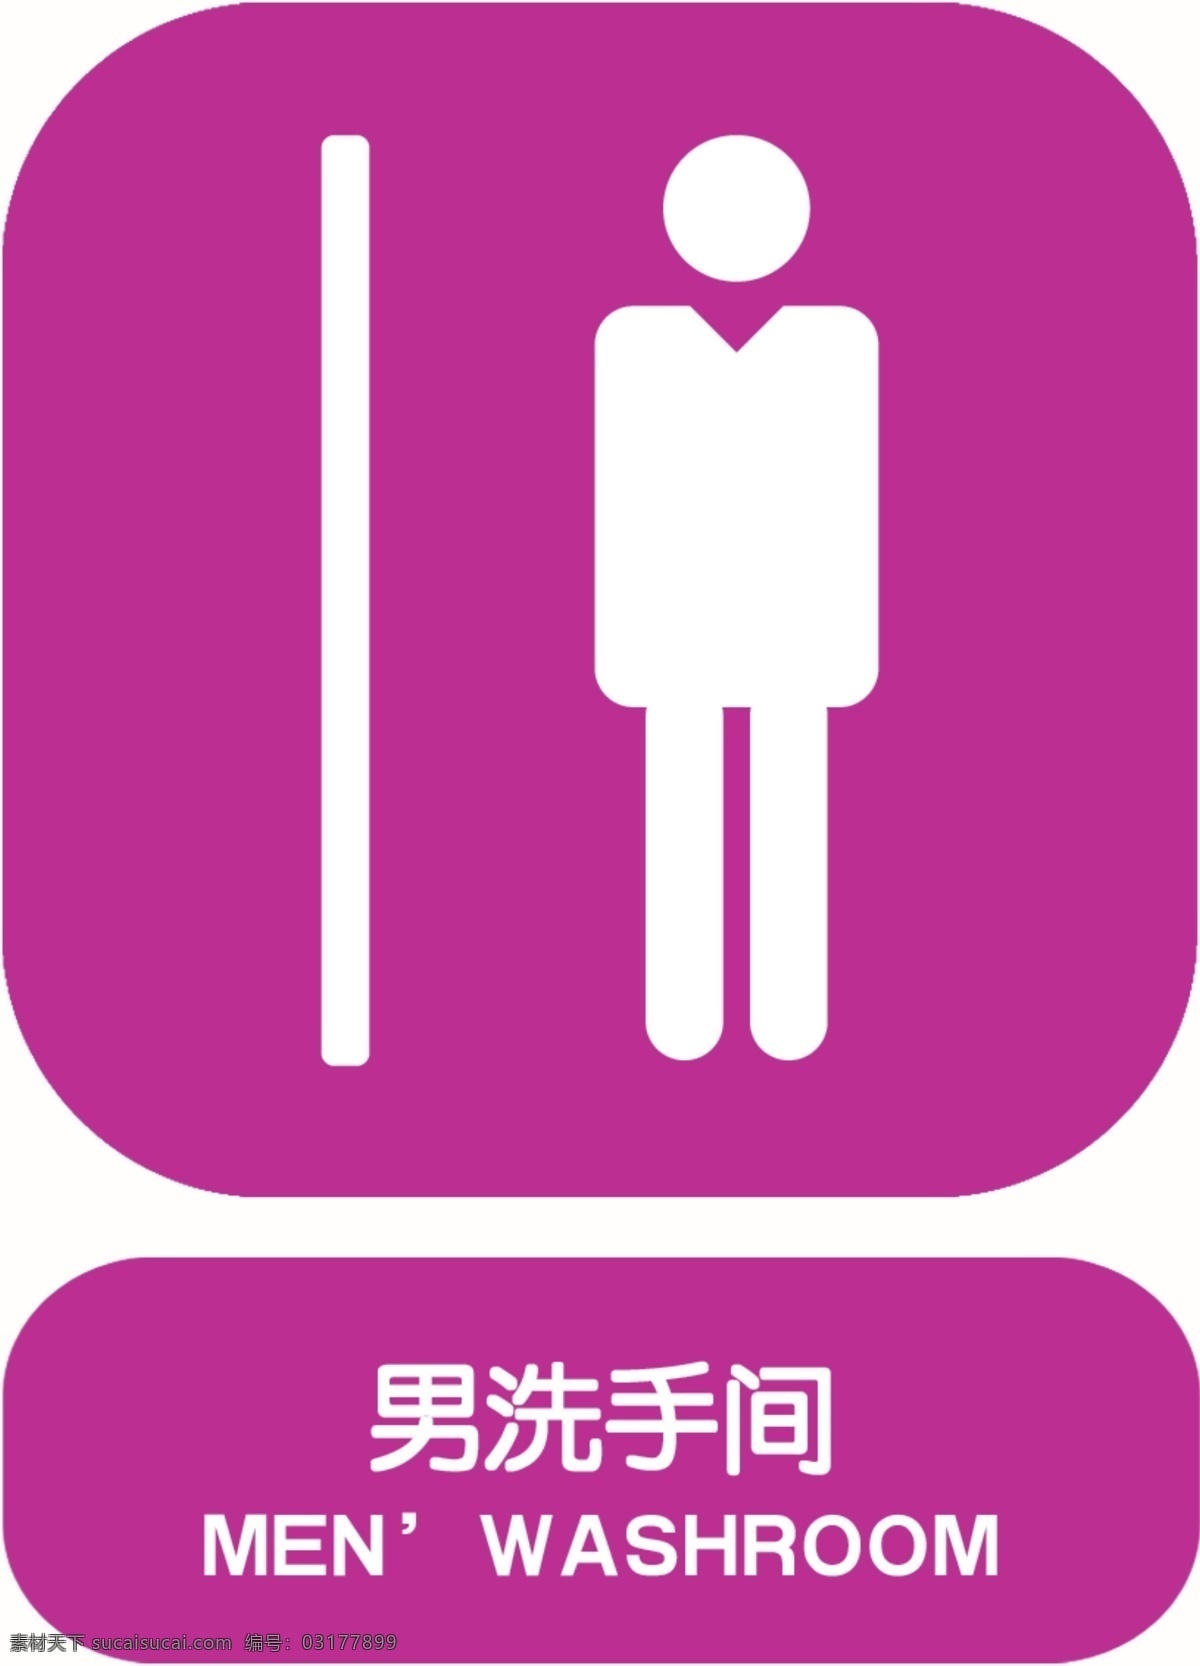 男洗手间标志 男洗手间 标志 公共标志 图标 标志设计 广告设计模板 源文件